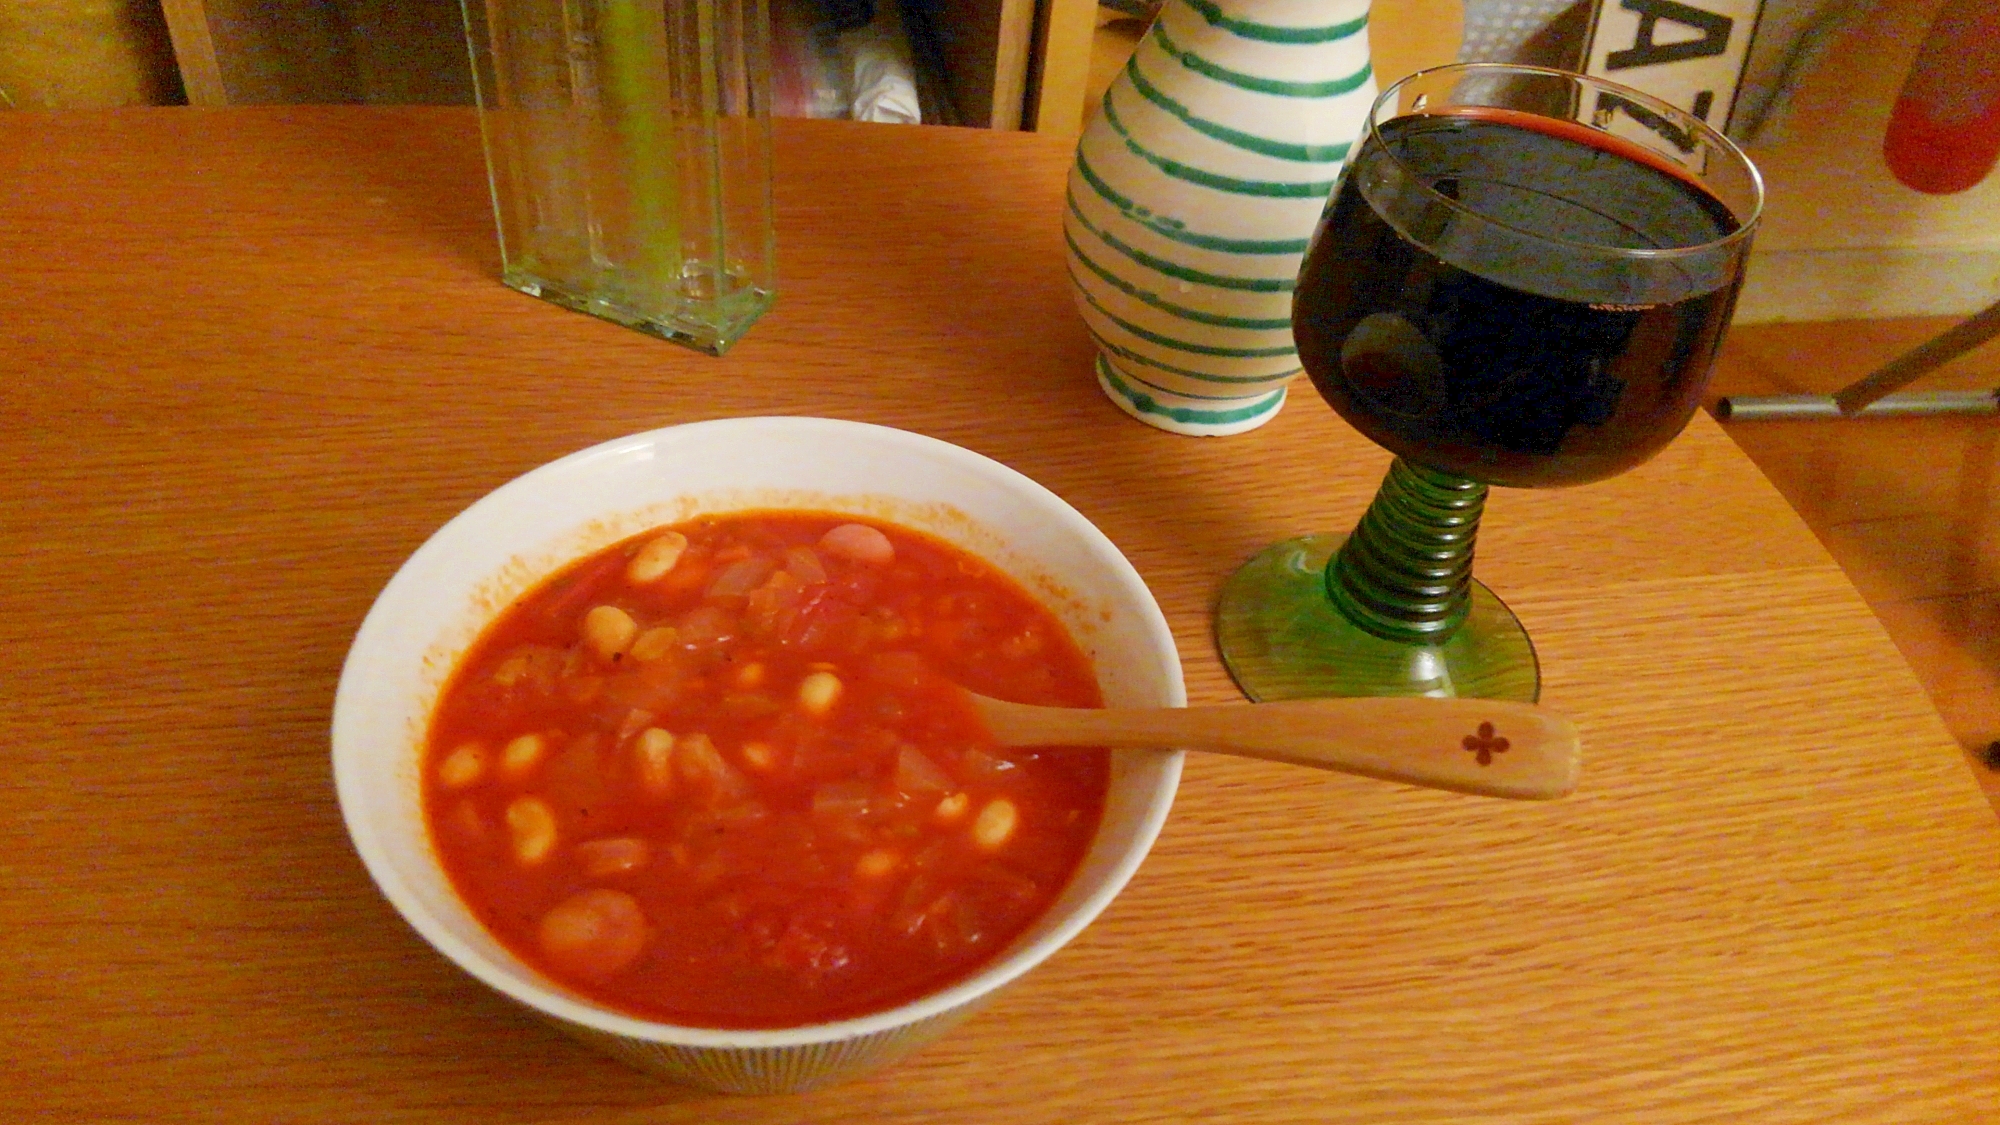 体ポカポカ、大豆とシナモンのスープ